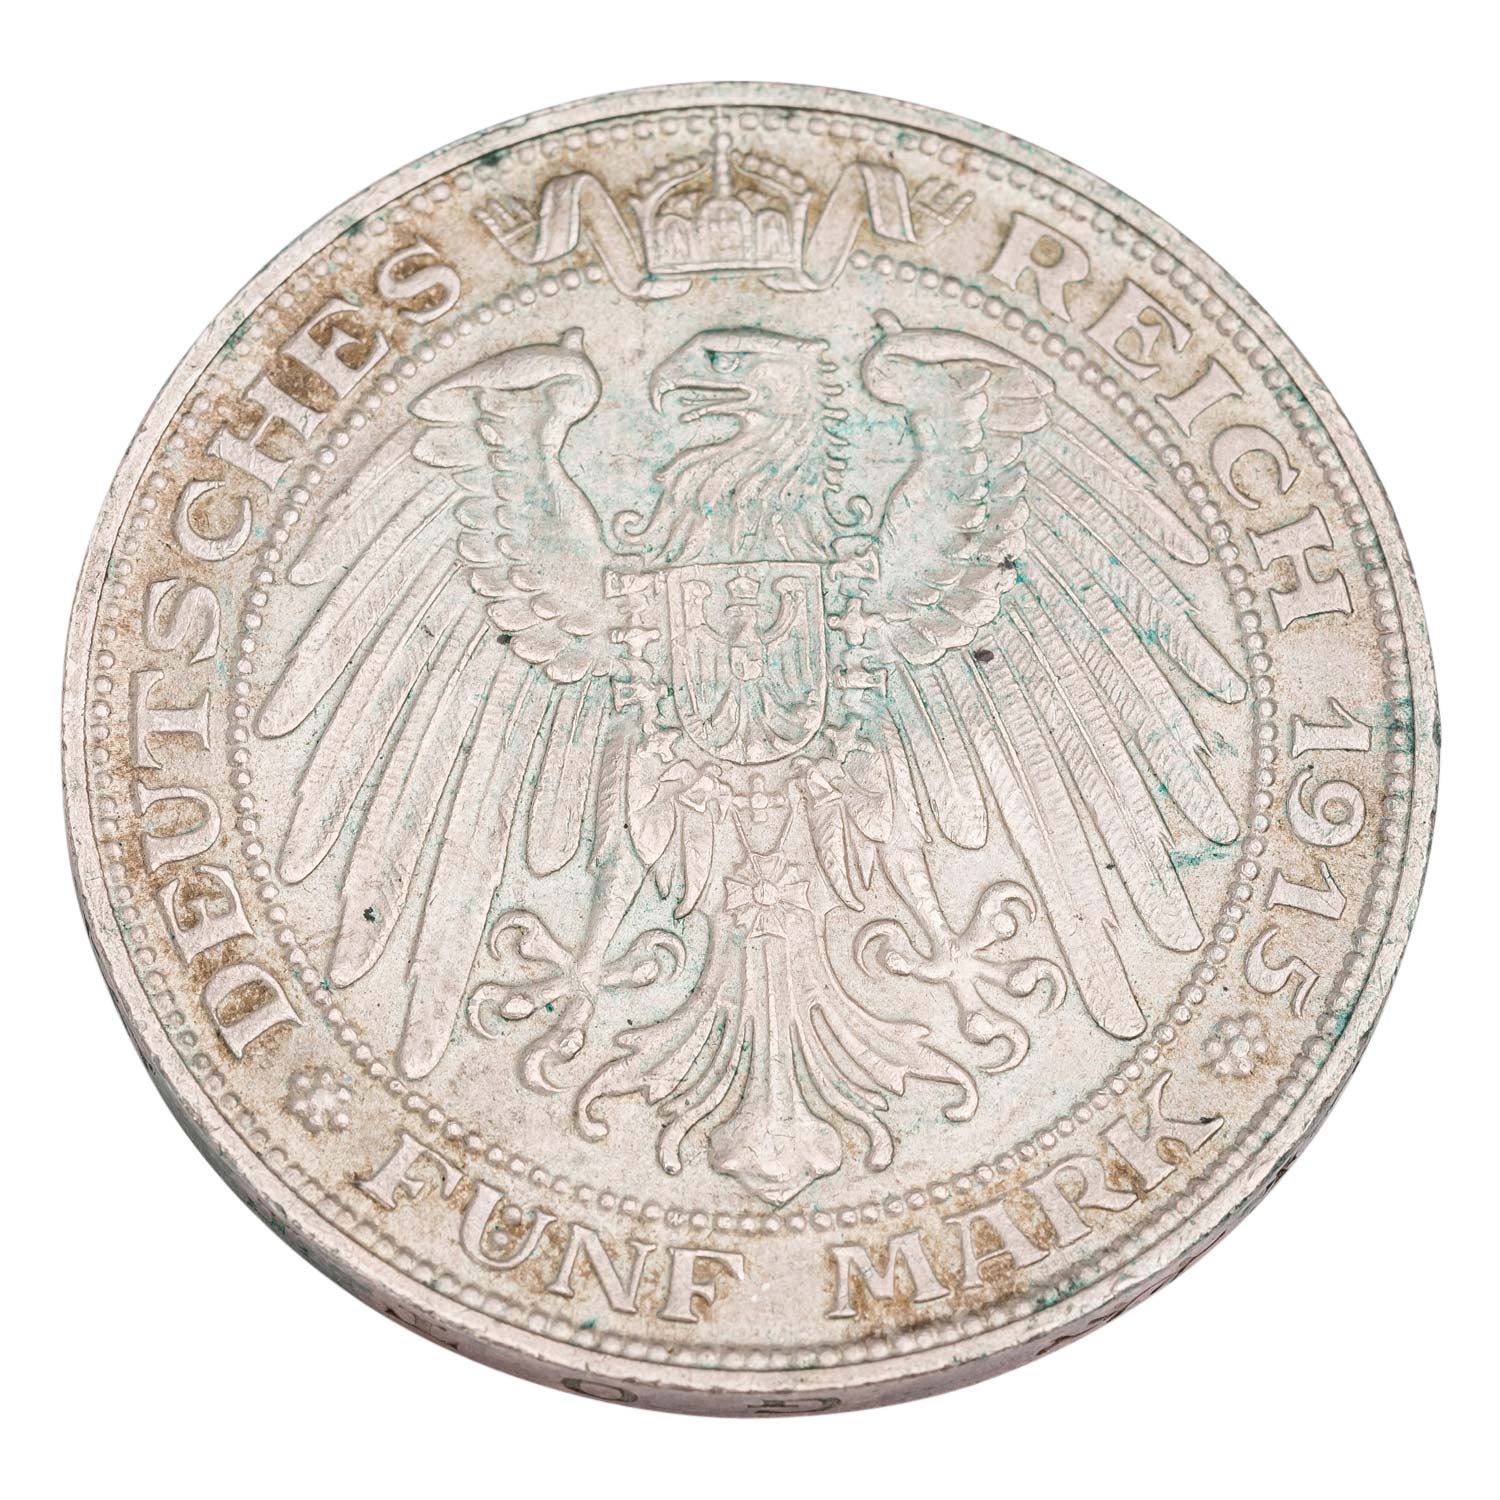 Deutsches Kaiserreich / Mecklenburg Schwerin - 5 Mark 1915, - Image 2 of 2